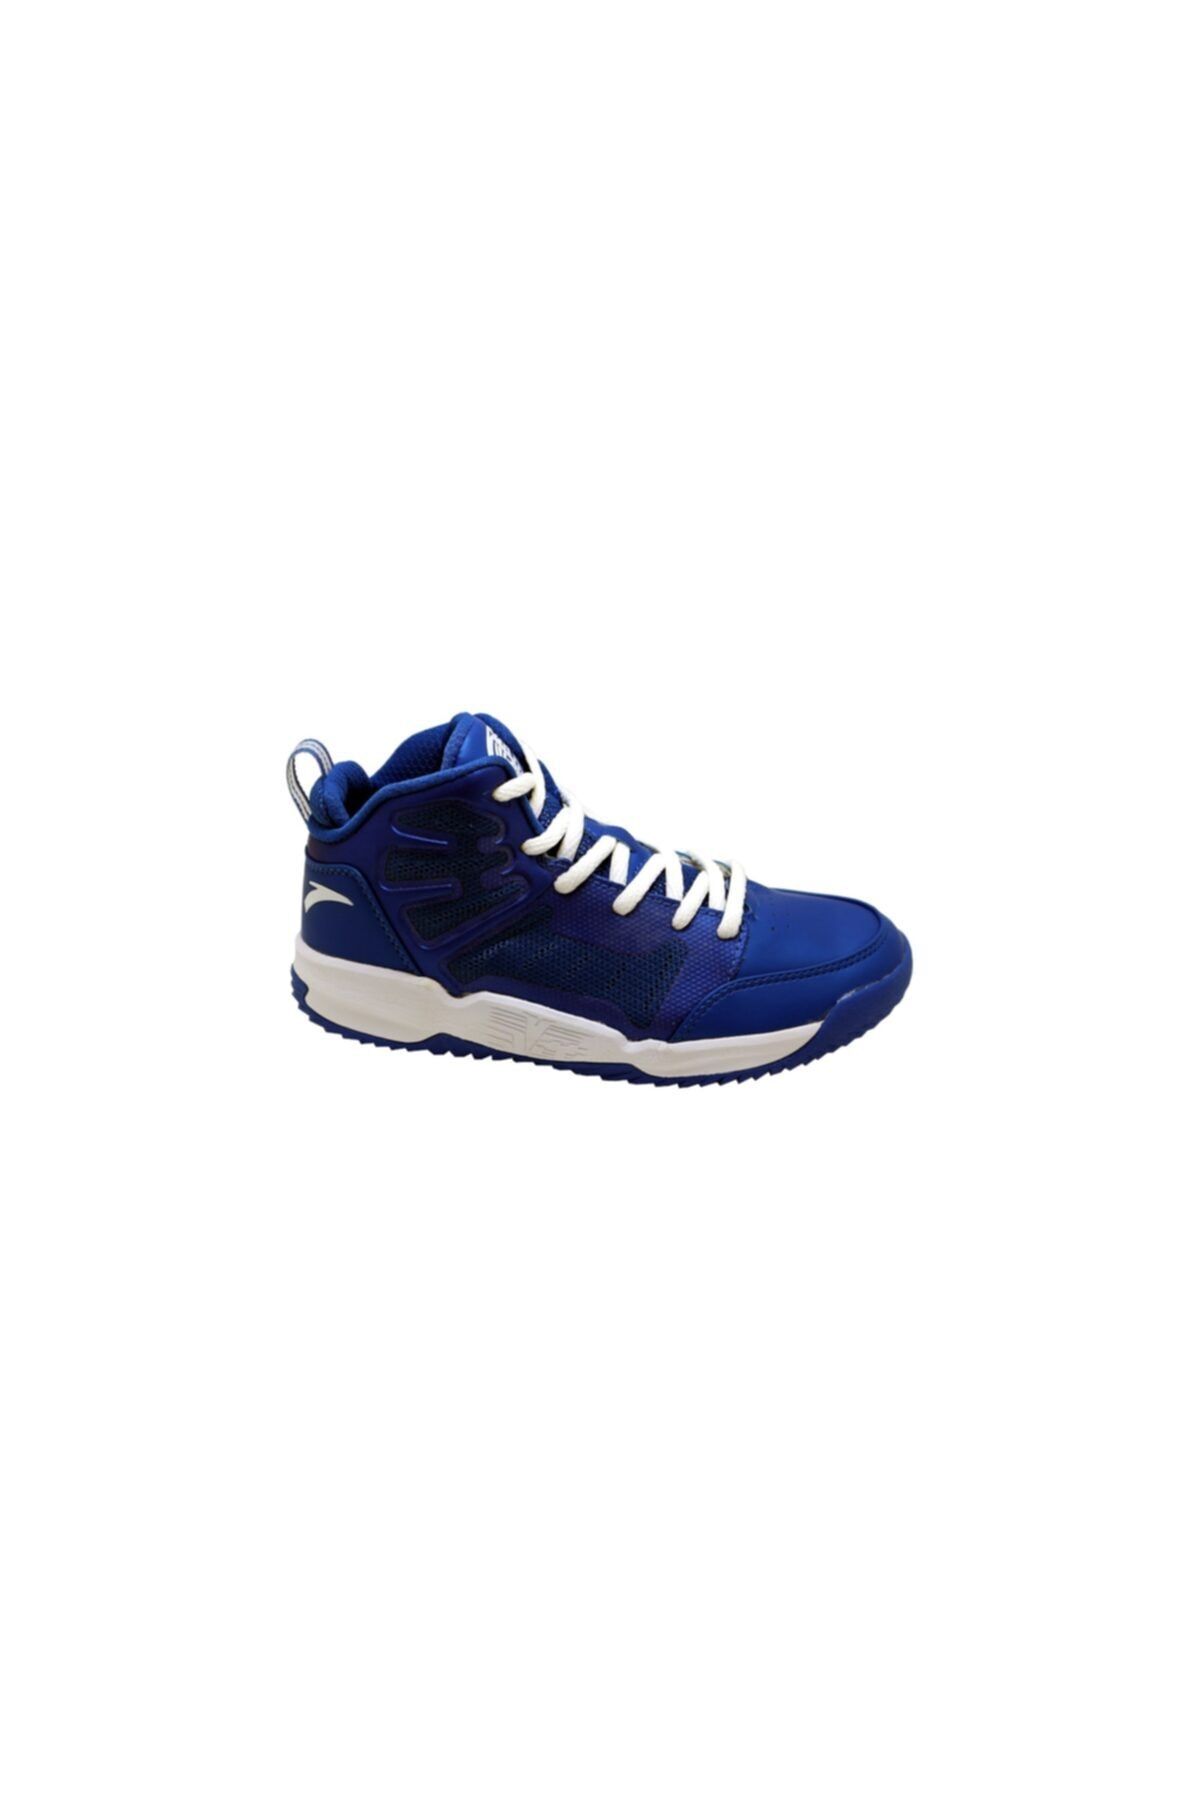 Anta Unisex Sax Mavi Garson Basketbol Ayakkabısı